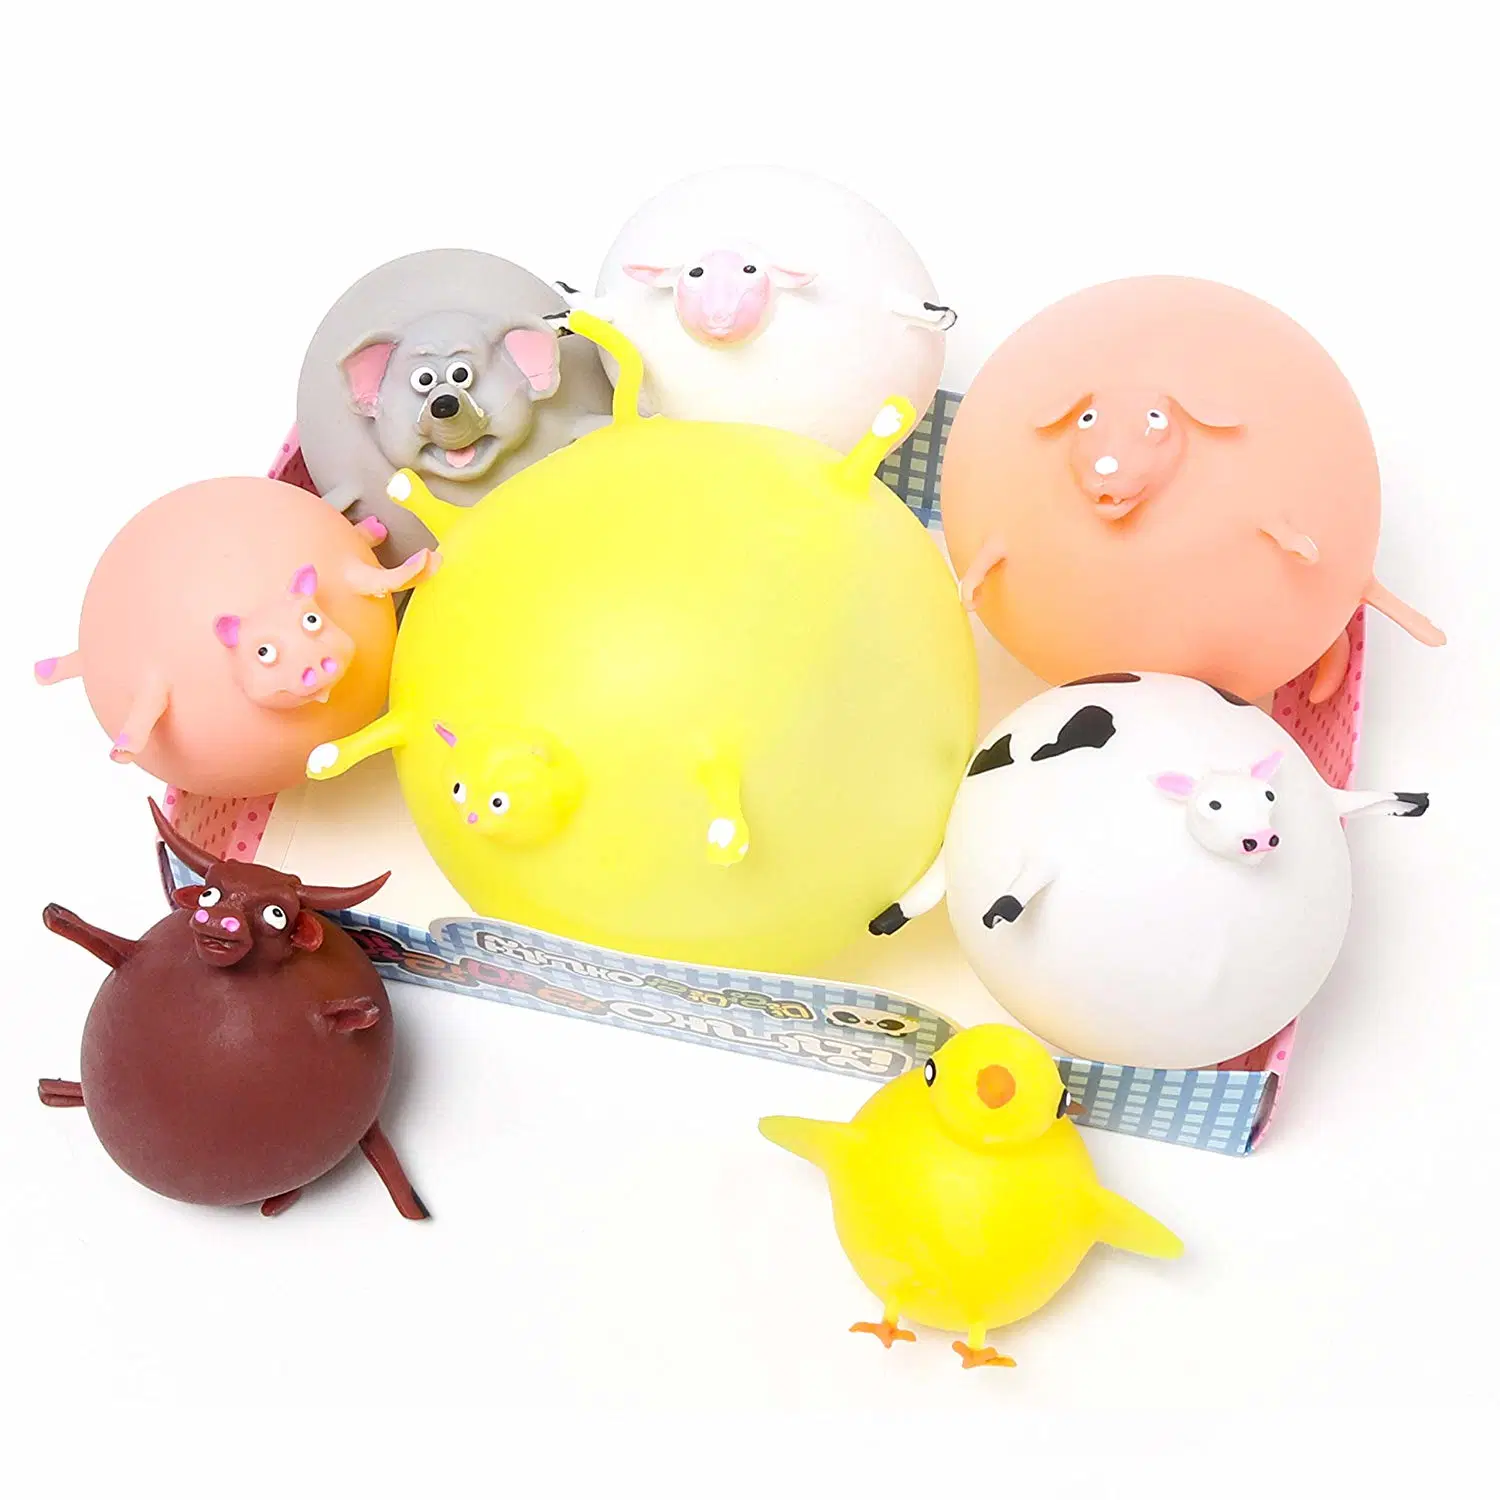 Ballons en forme d'animaux Squishy TPR Squishies anti stress Ball jouets d'allégement pour les enfants